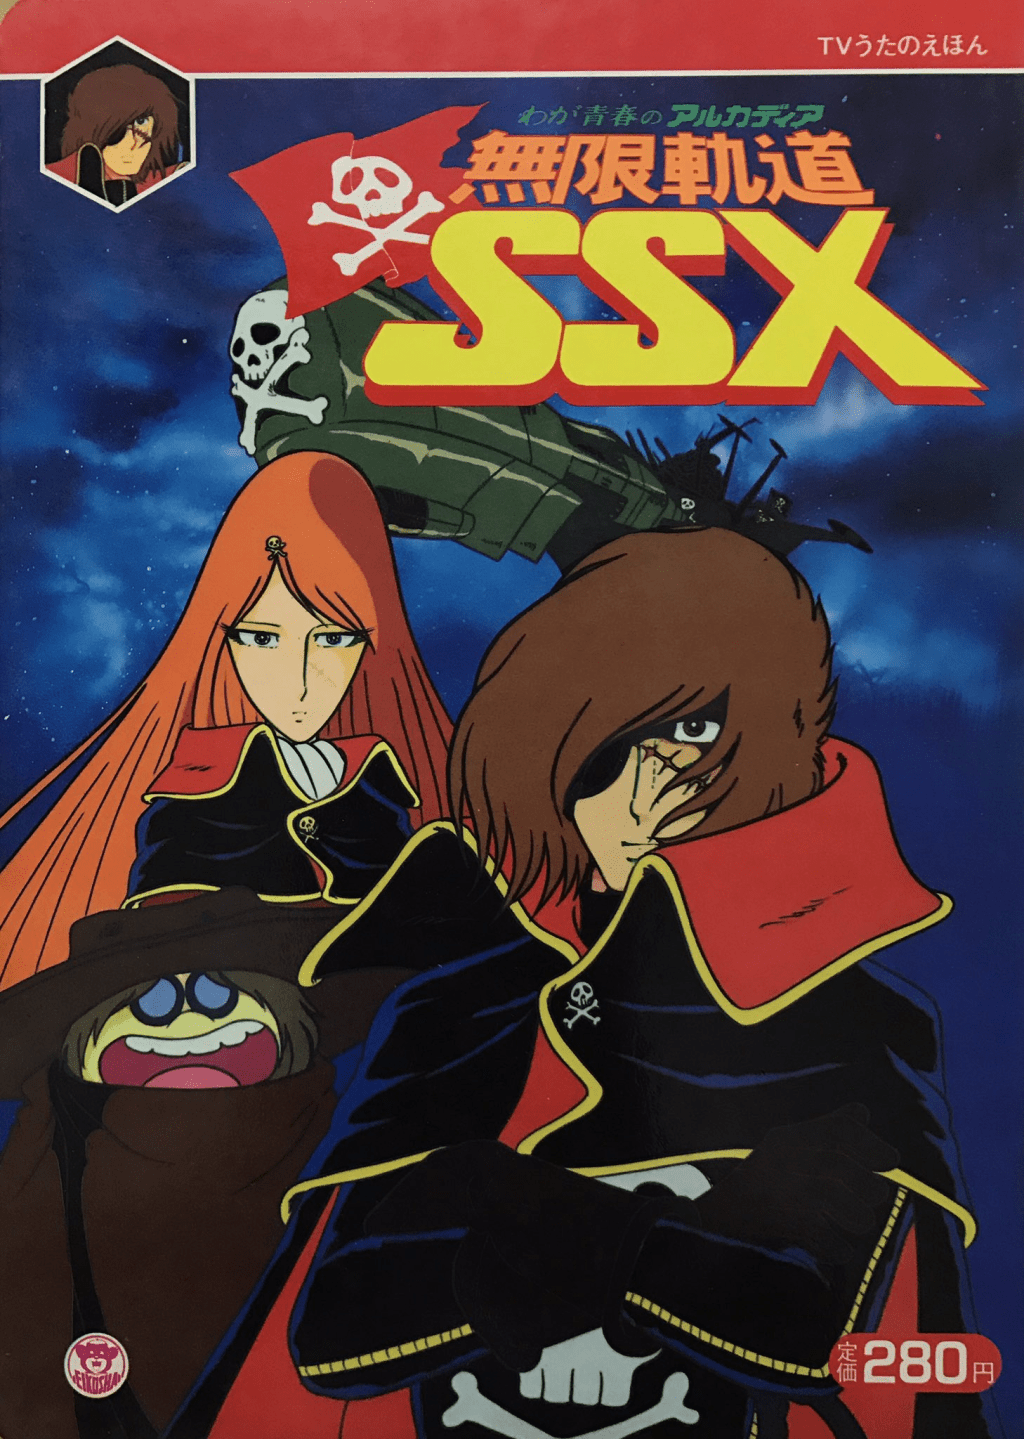 《無限軌道SSX》是東映動畫製作的電視動畫，於1982年10月13日至1983年3月30日於TBS電視台播出，全22集。